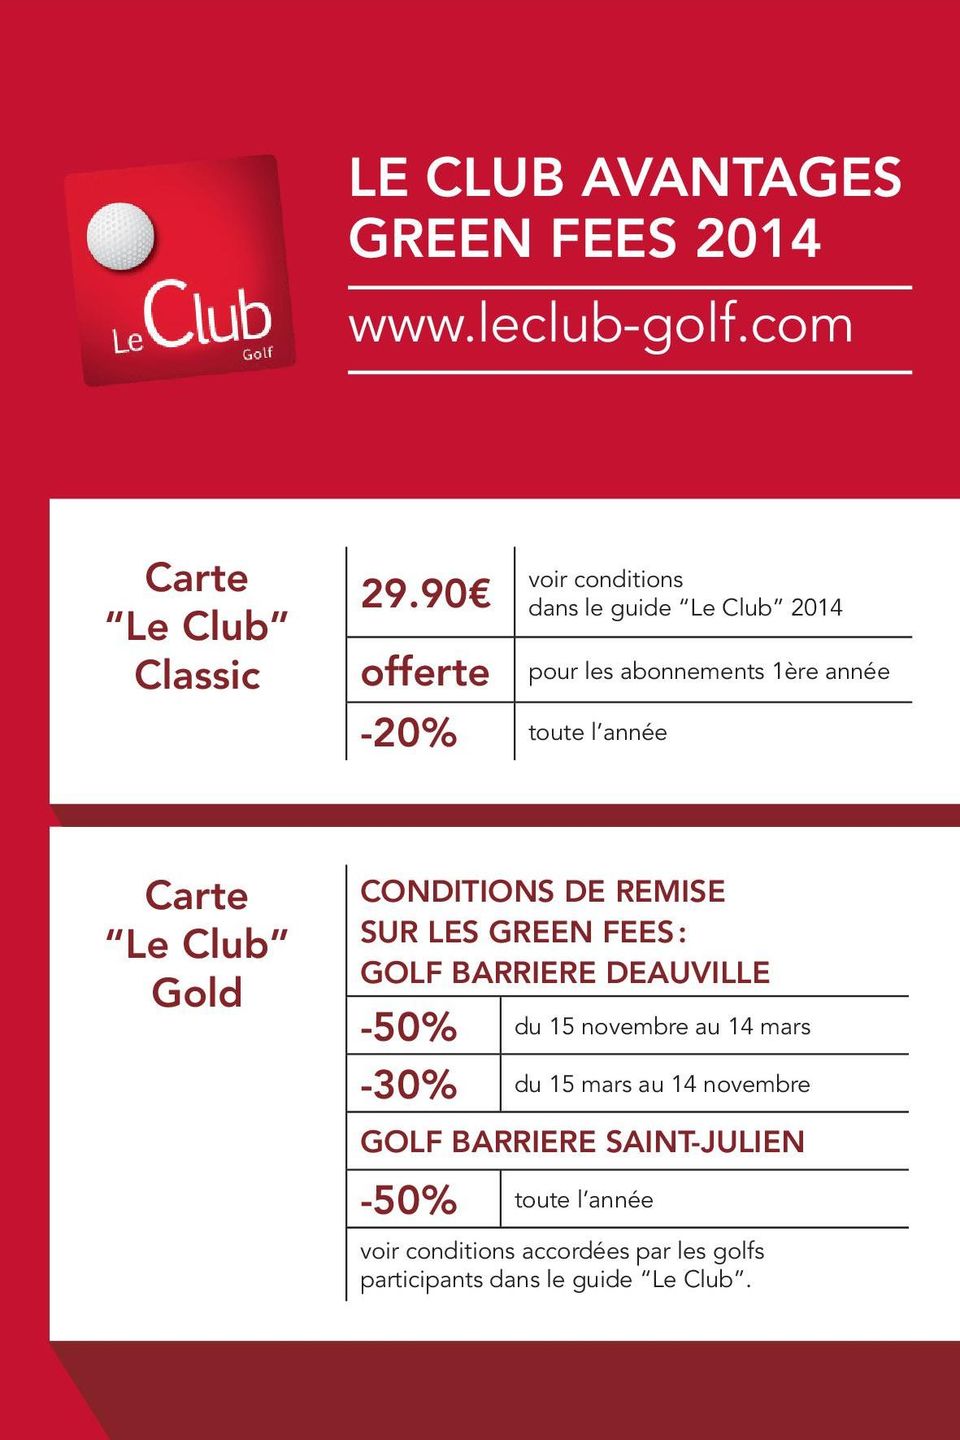 Le Club Gold Conditions de remise sur les green fees : GOLF BARRIERE DEAUVILLE -50% -30% du 15 novembre au 14